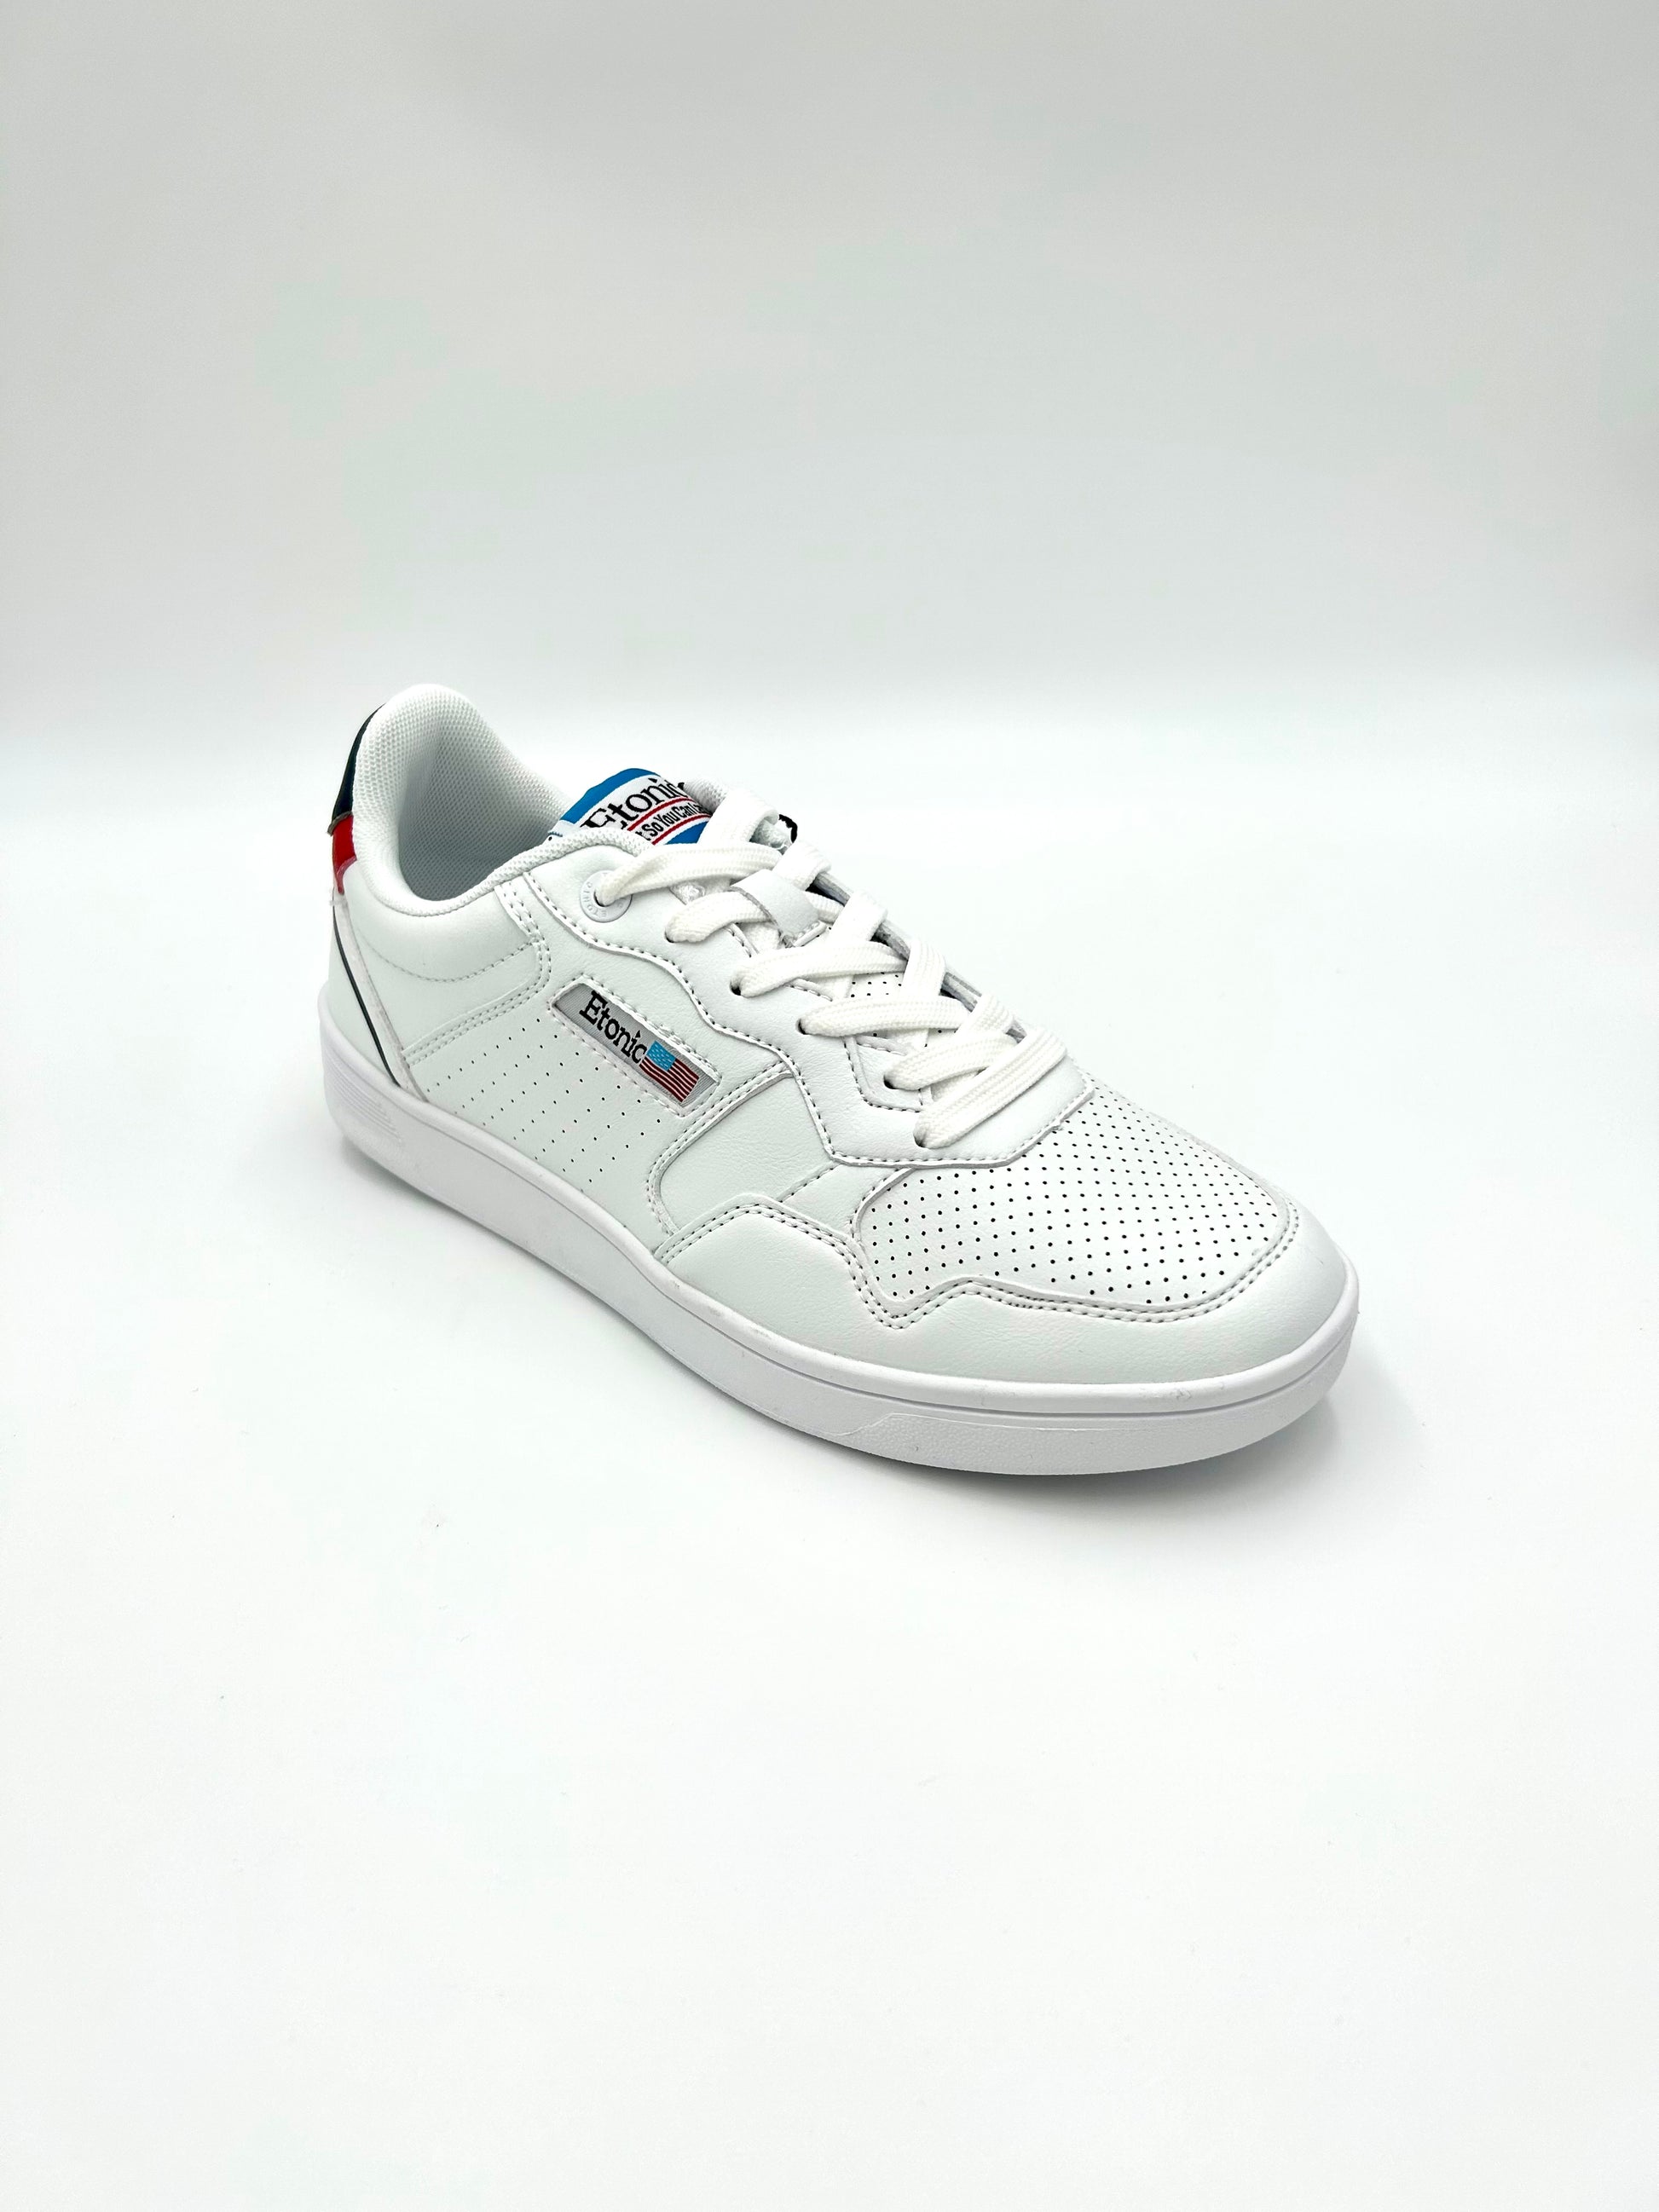 Etonic Sneakers uomo ETM214640 - white flag - Etonic